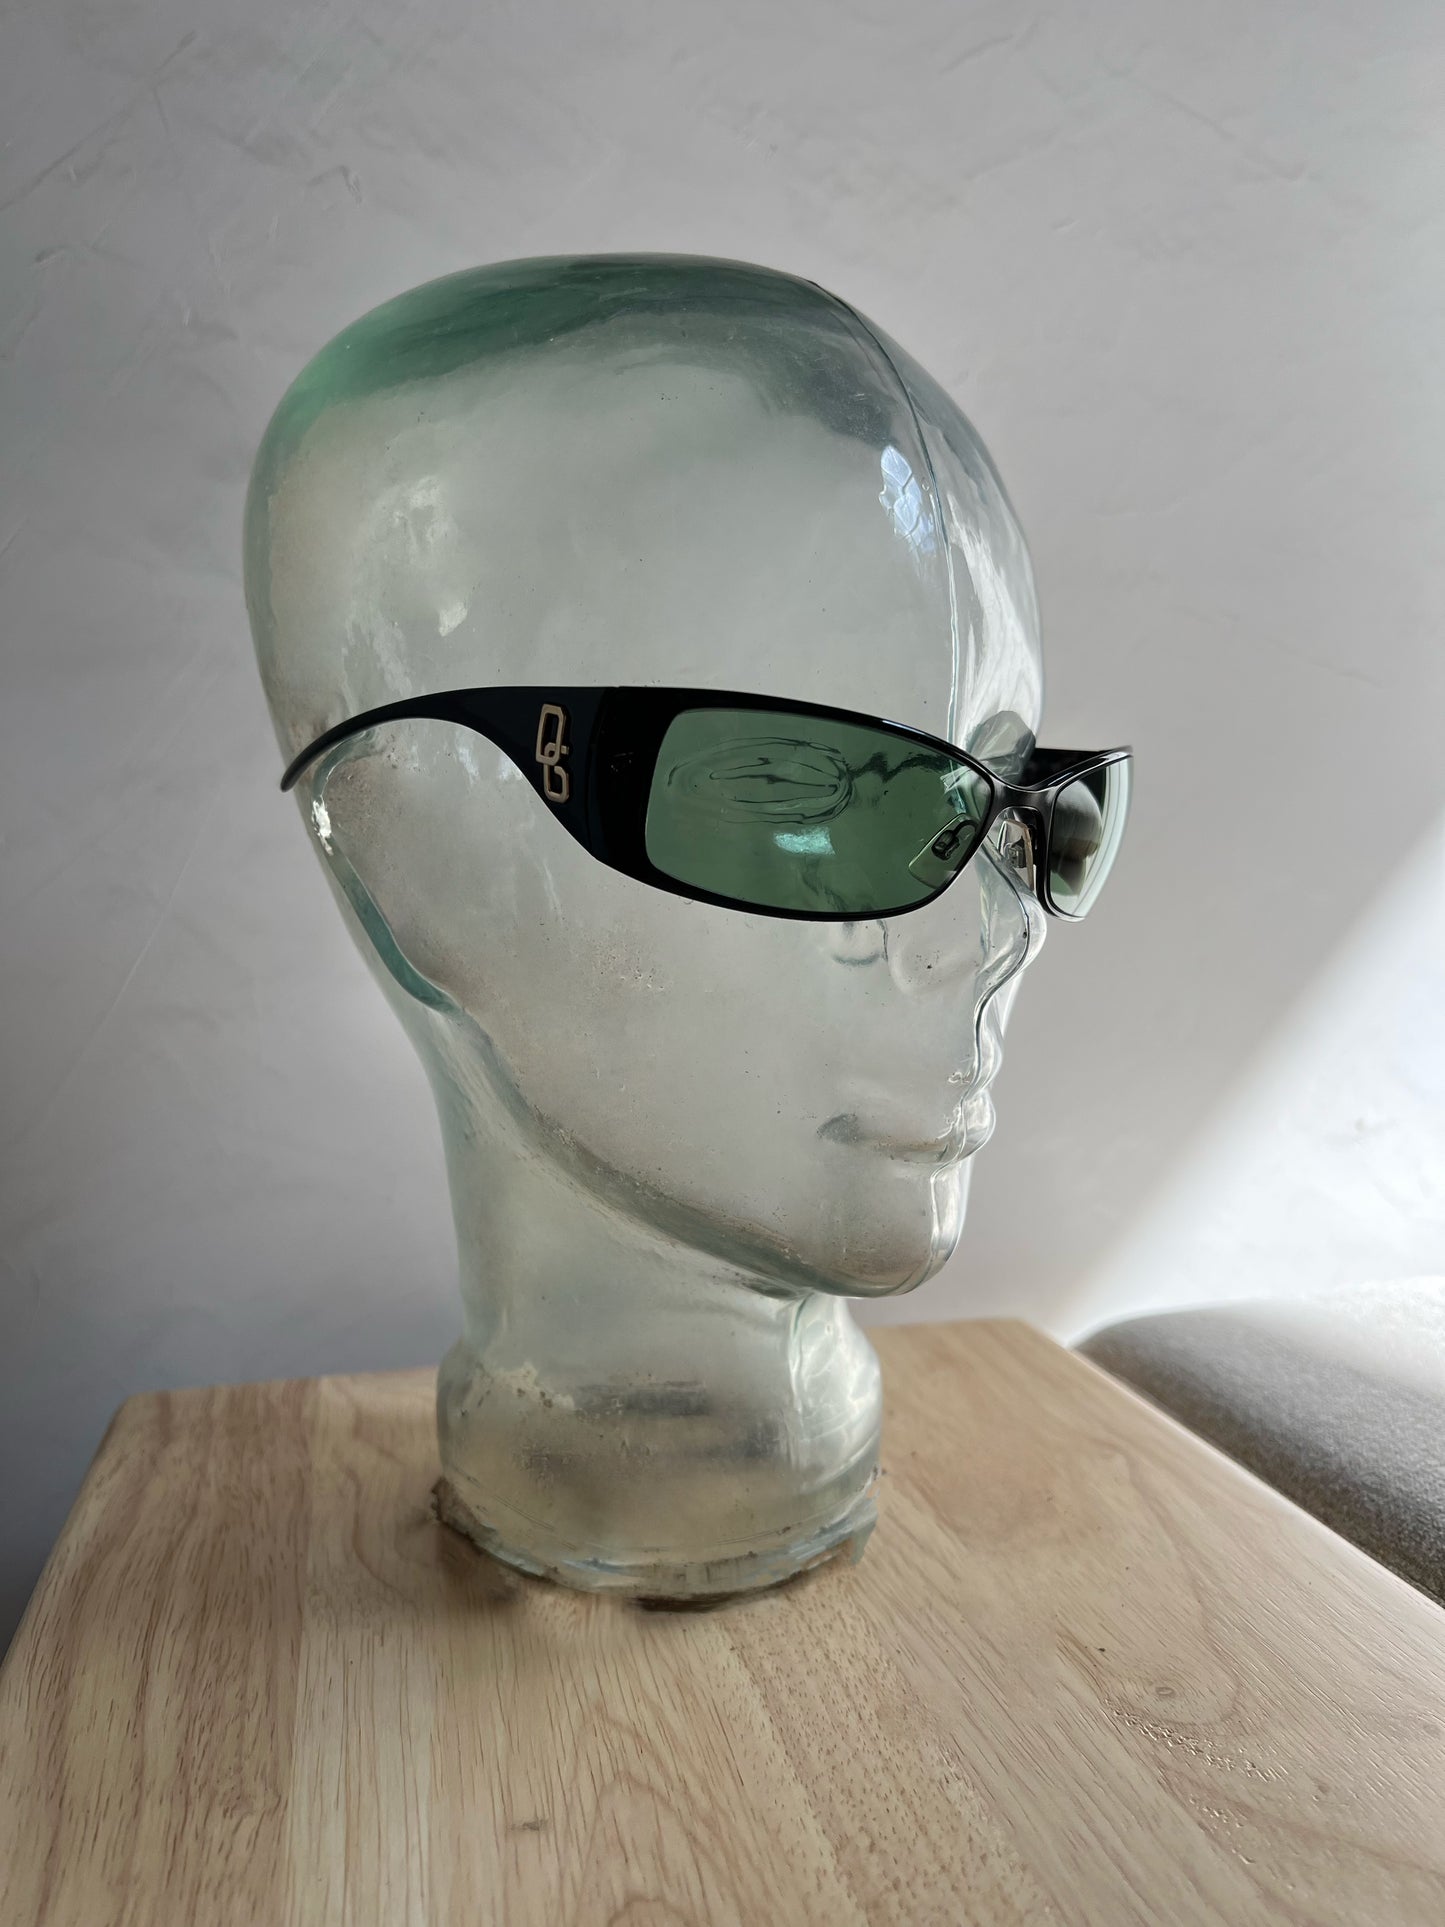 Vintage D&G Sunglasses